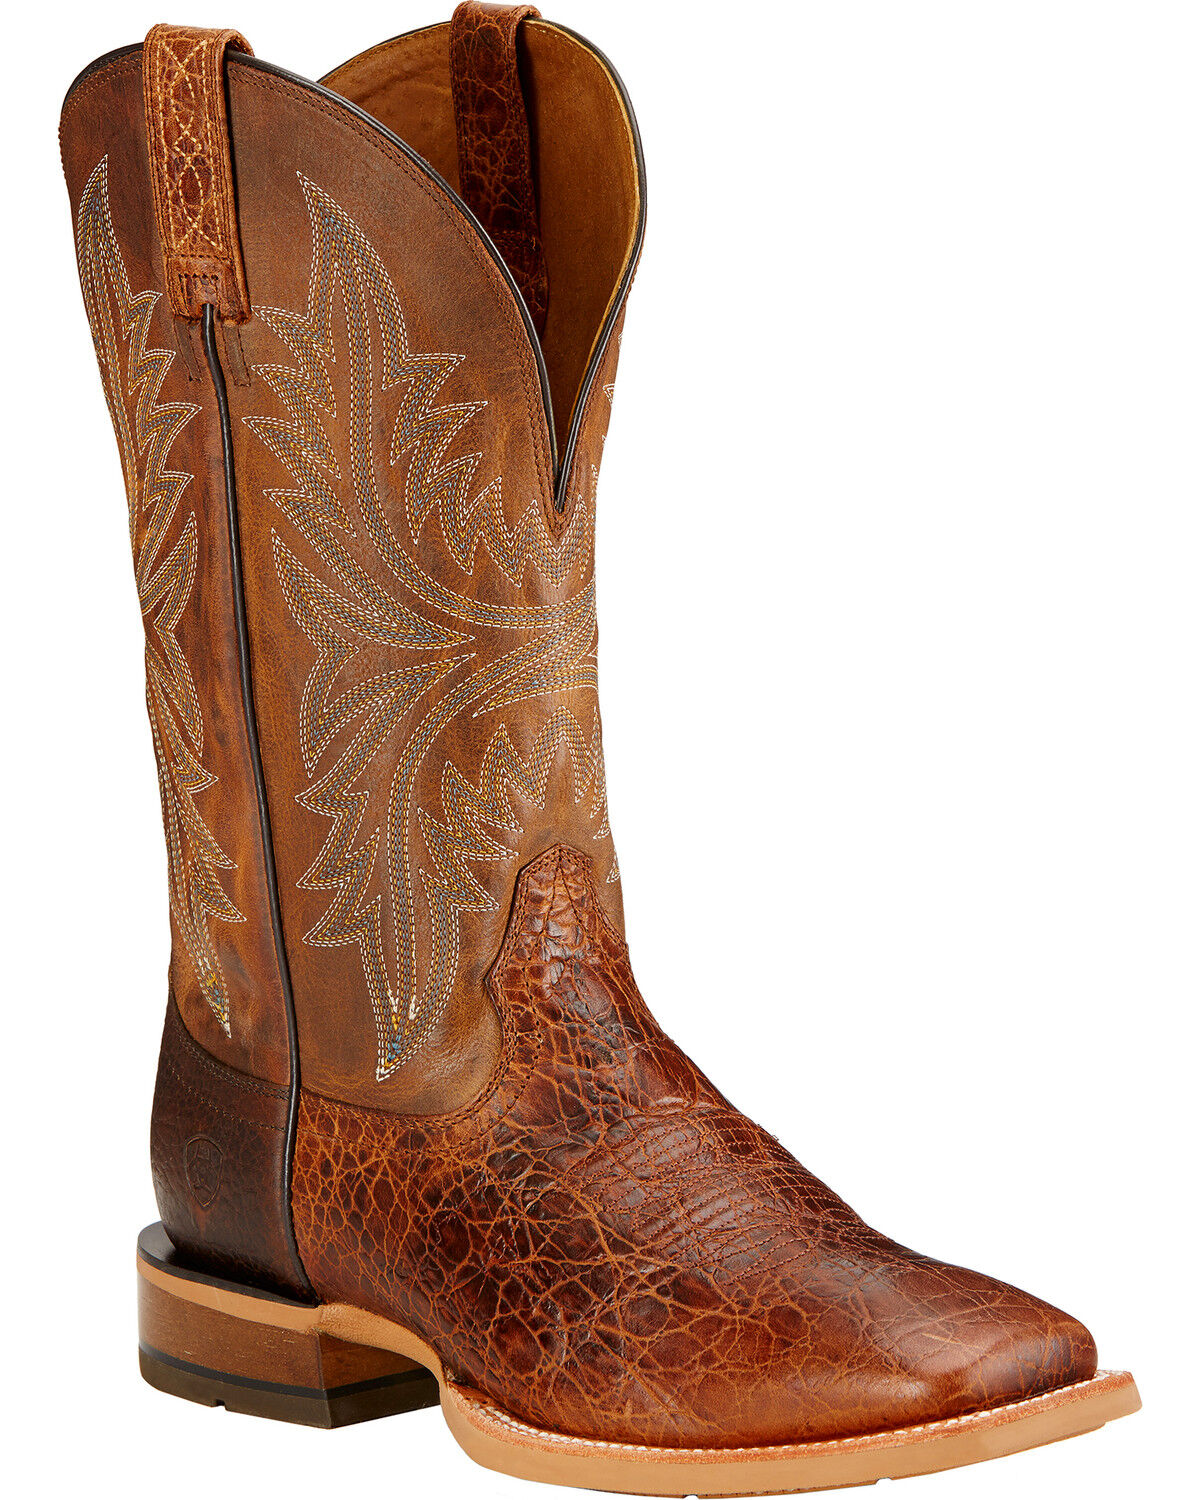 size 14 cowboy boots